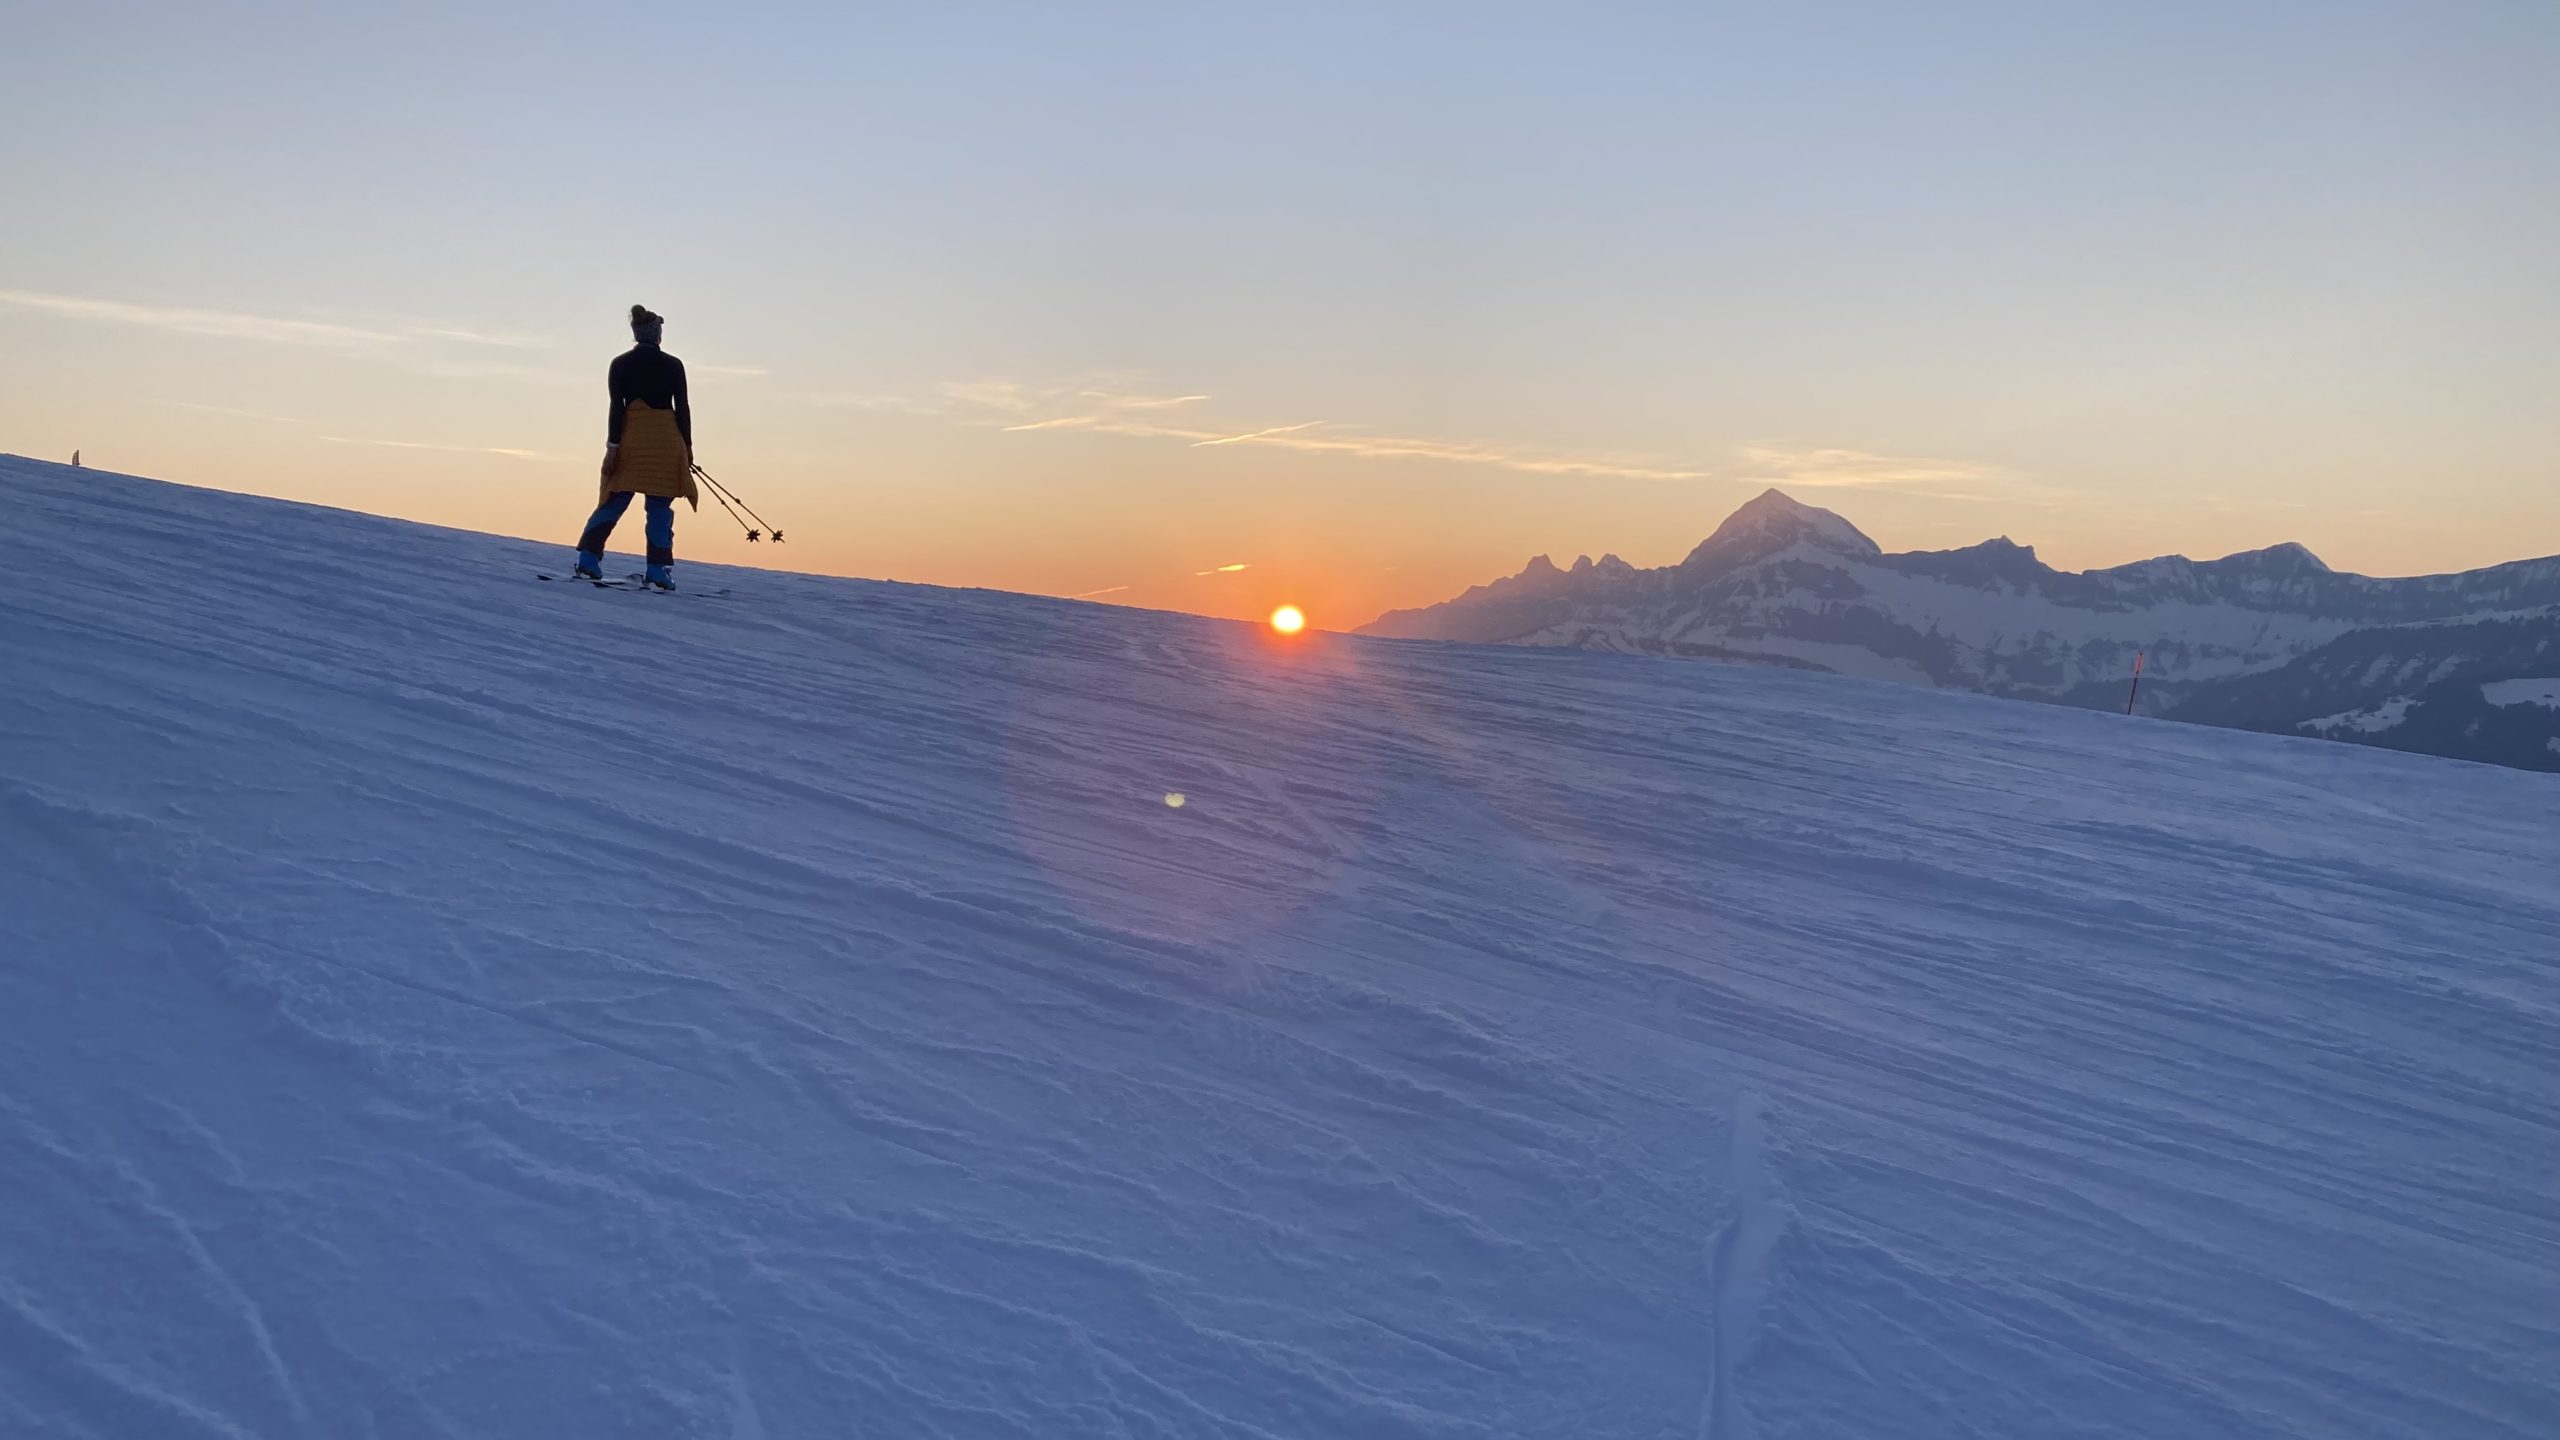 Heidi au ski et coucher de soleil depuis le la piste bleue